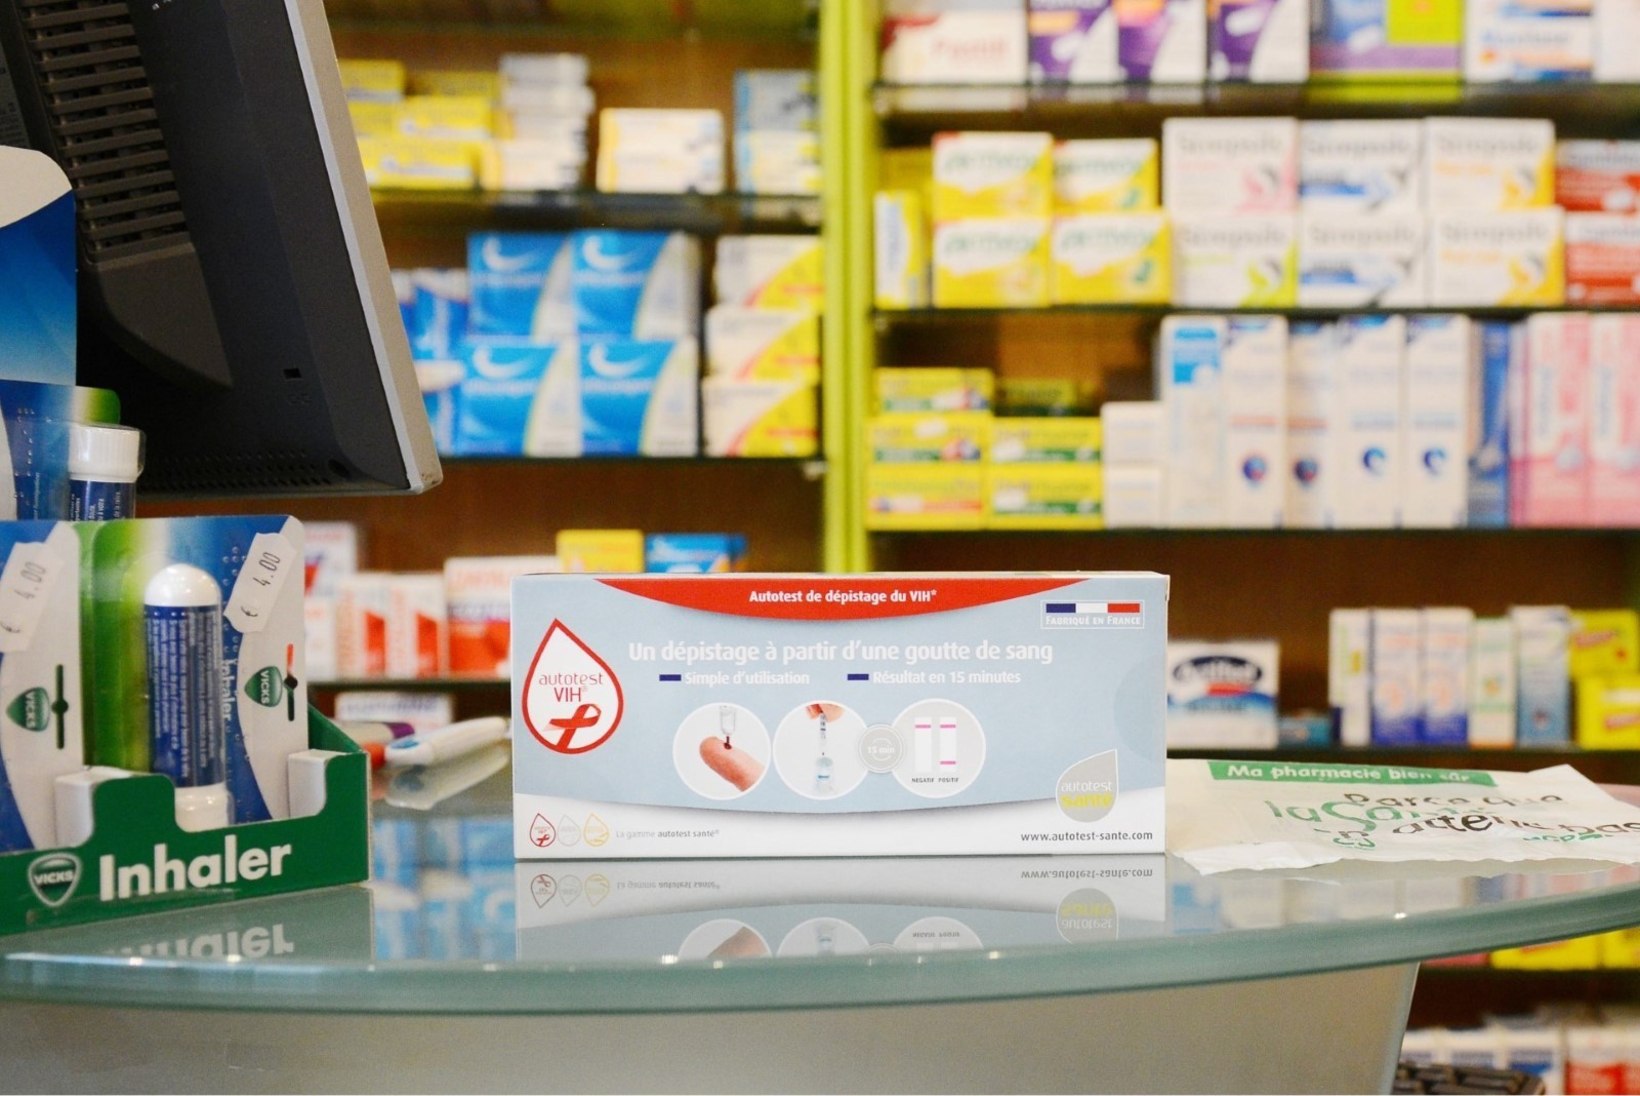 HIV kiirtest jõuab apteekidesse müügile suve lõpuks